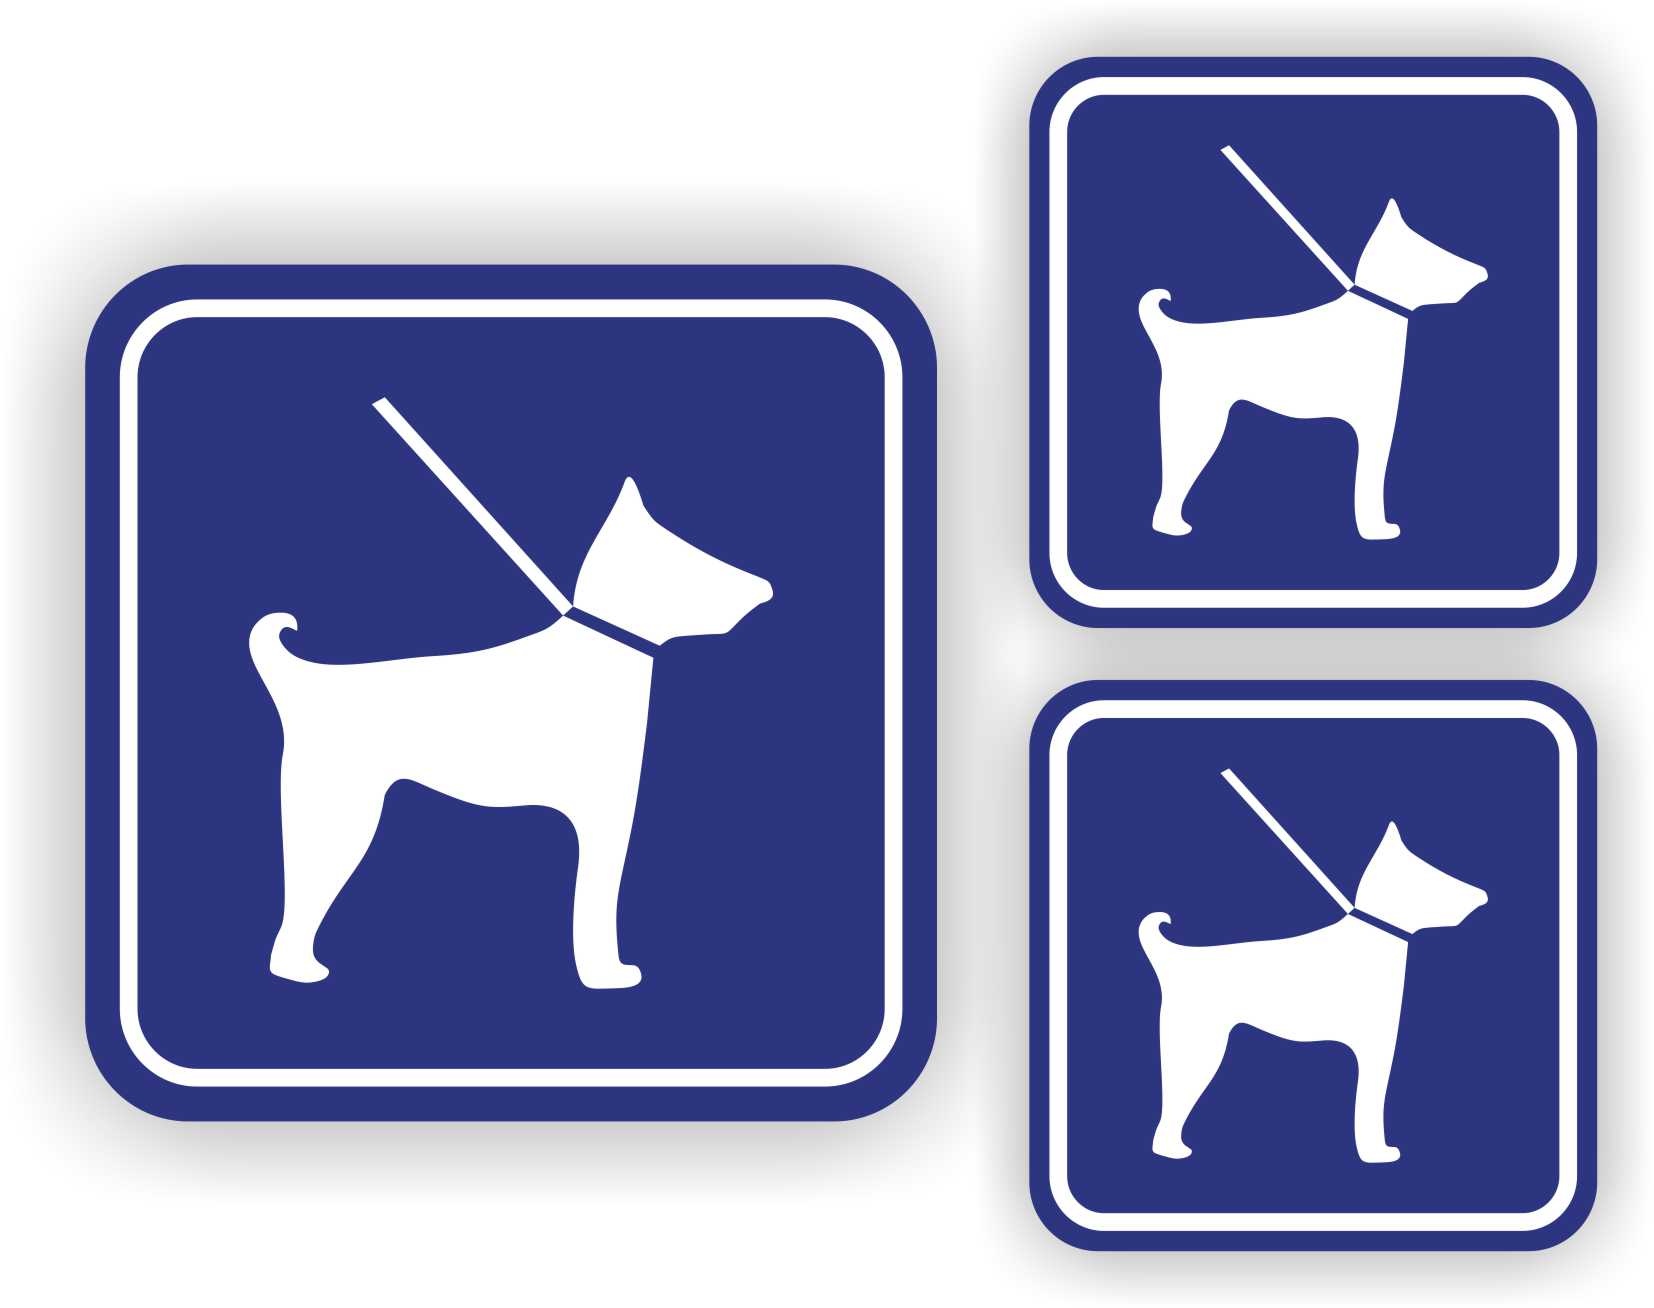 Kennis maken Zelfrespect Mus Stickers honden blauw verkeersbord set van 3 stuks - JERMA  AllerhandeStickers